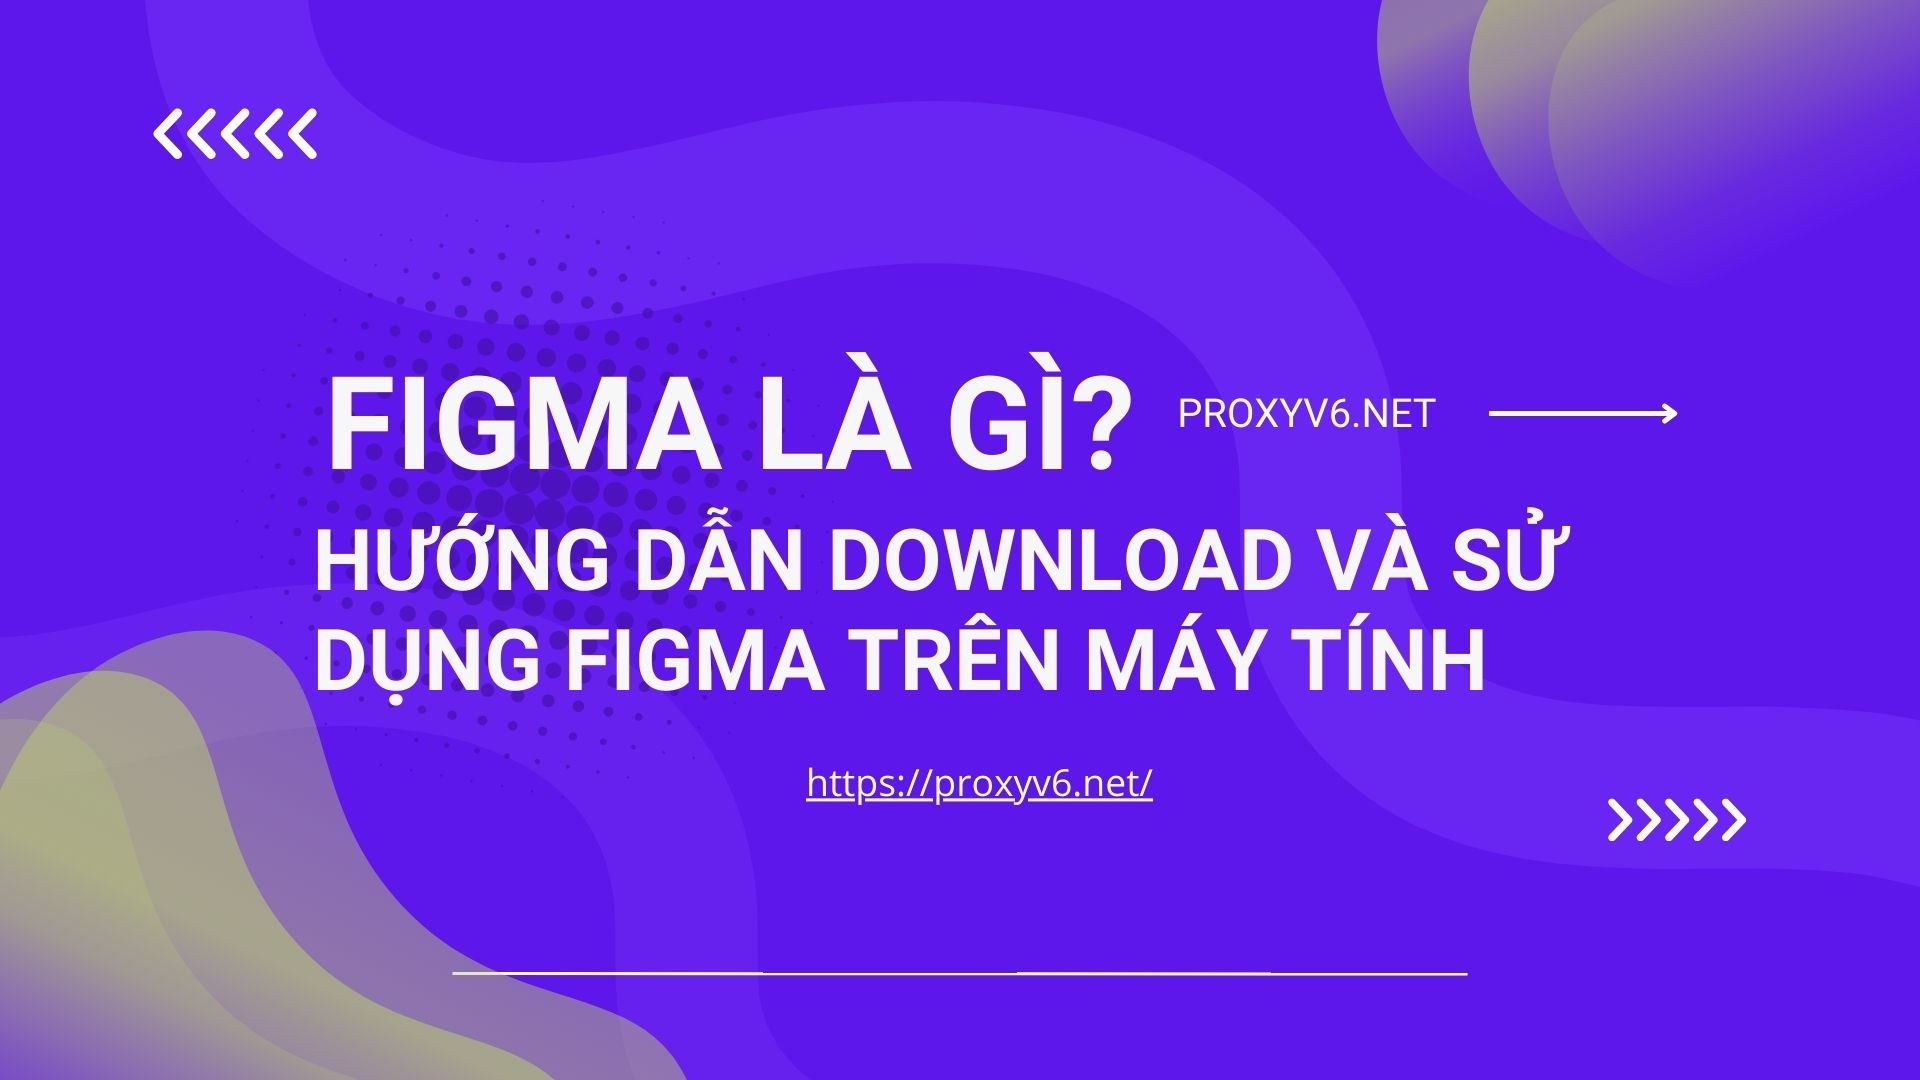 figma là gì? Hướng dẫn download và sử dụng figma trên máy tính